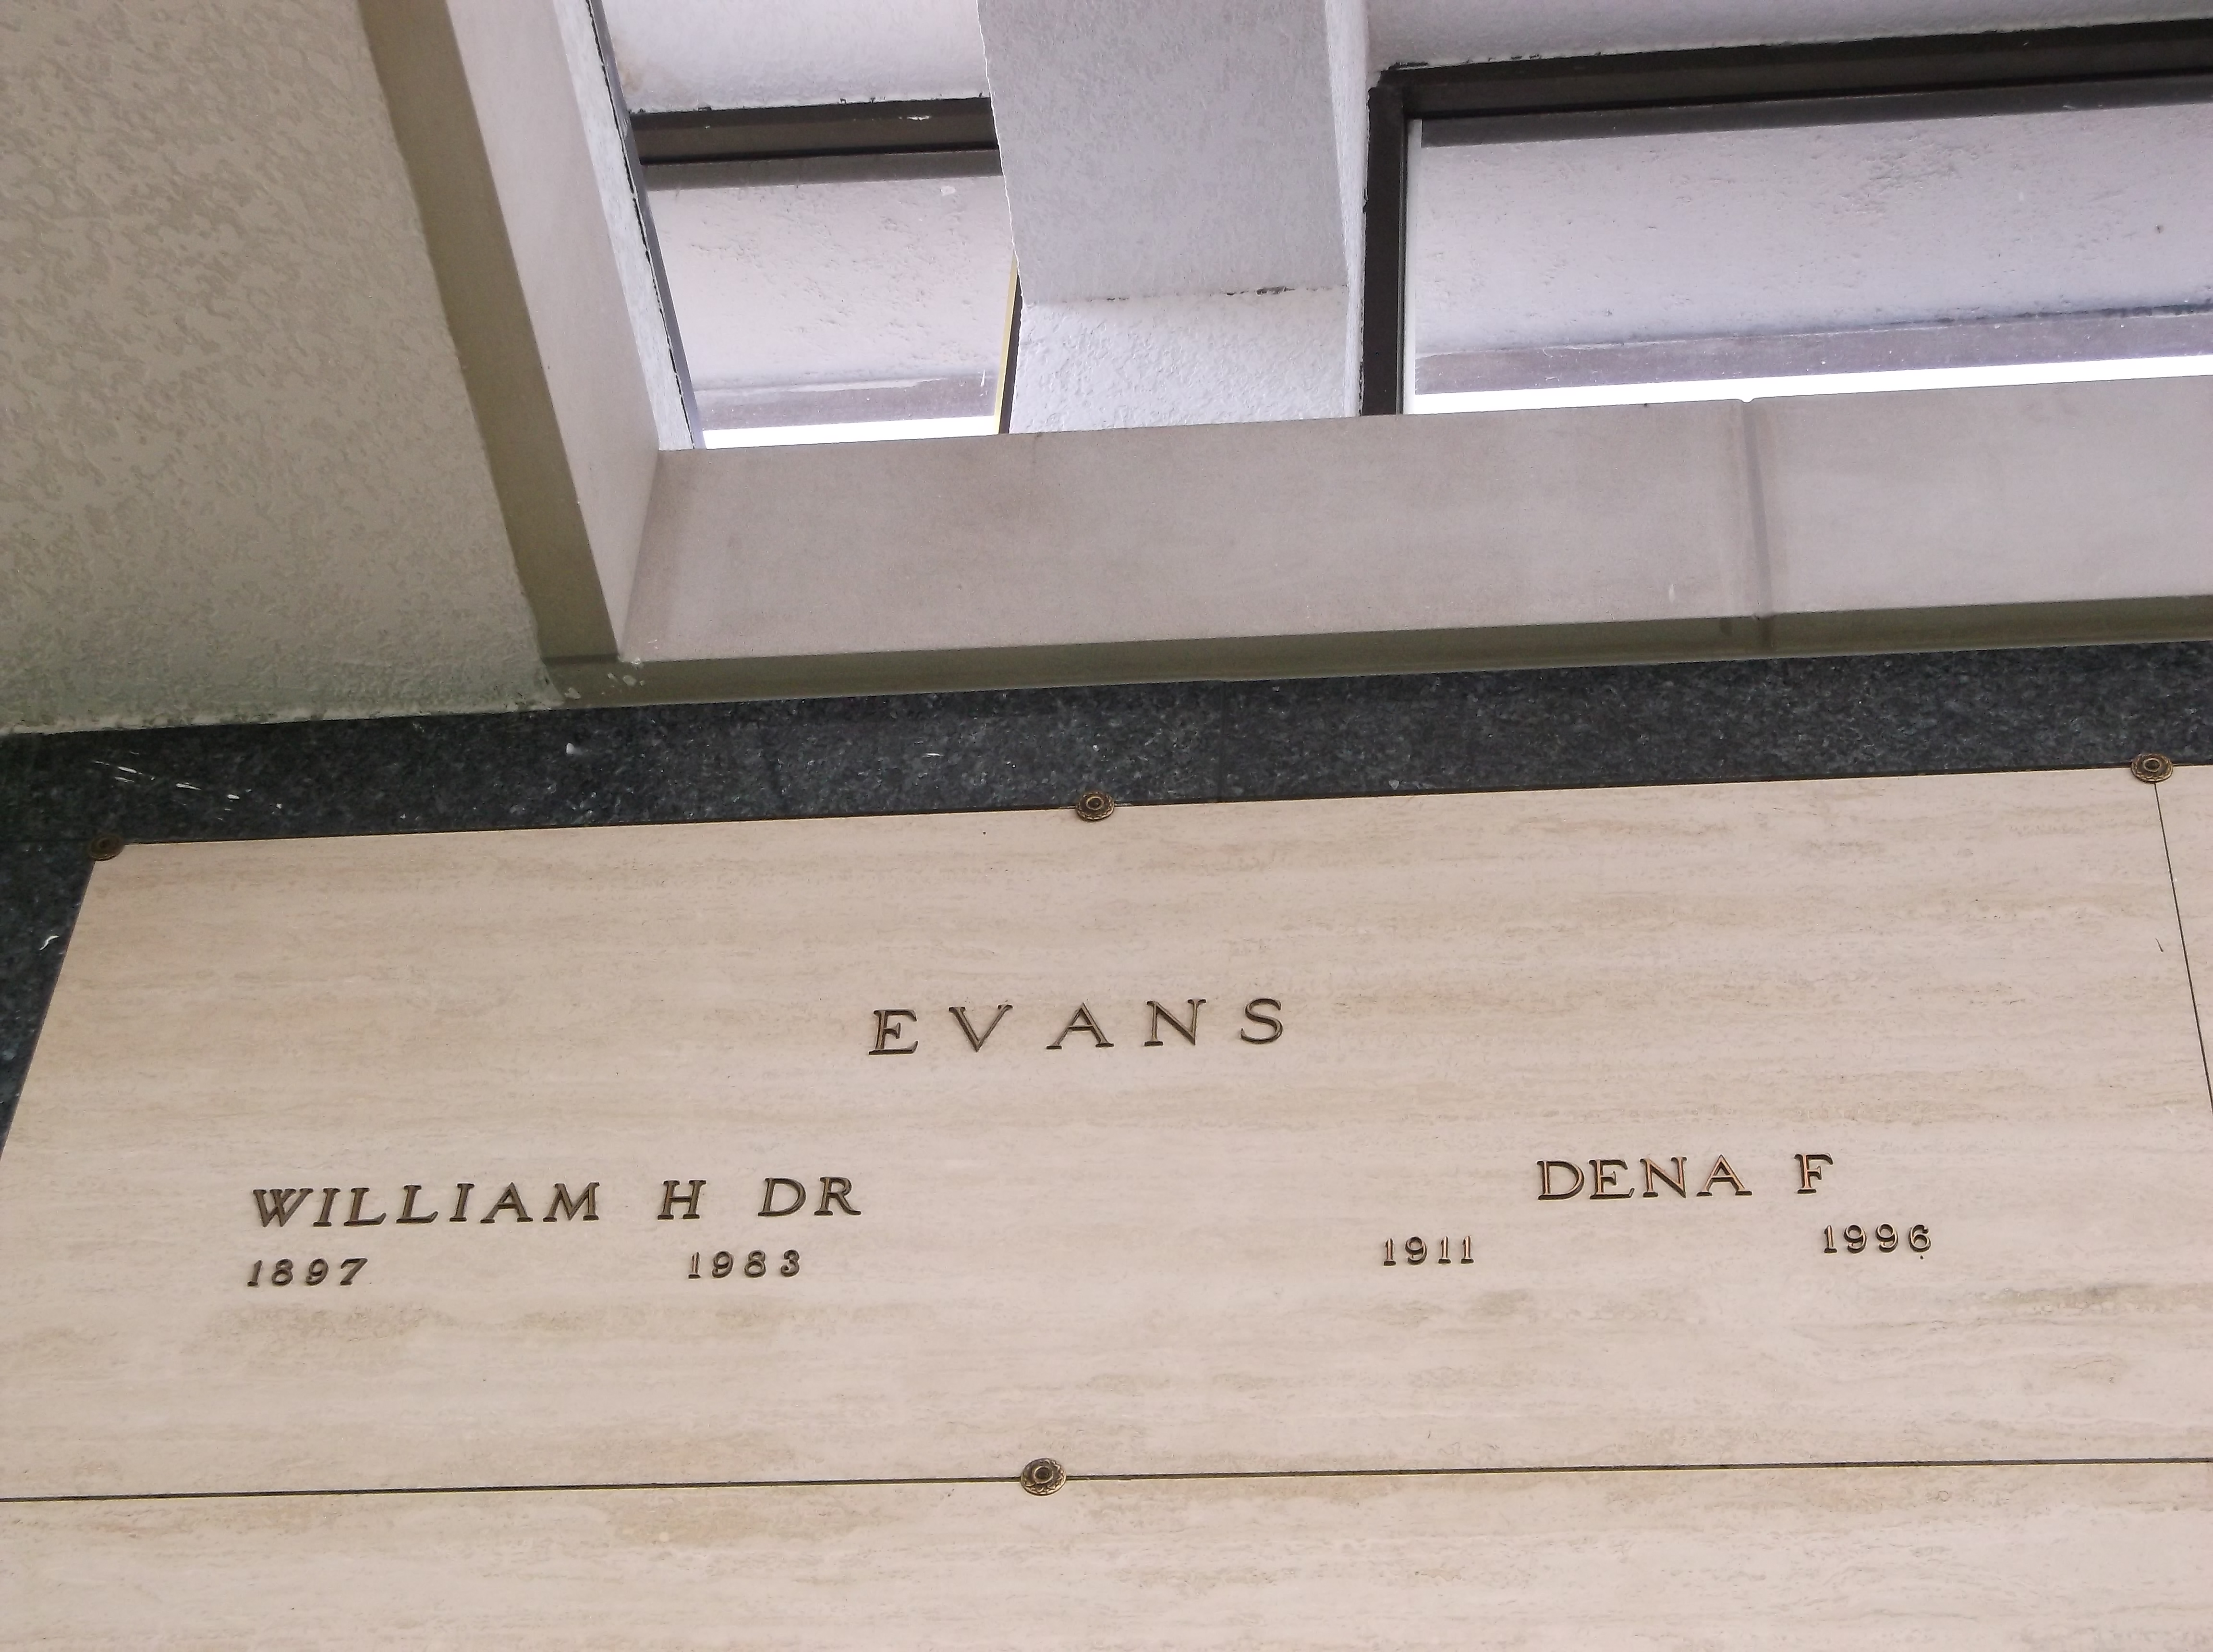 Dr William H Evans